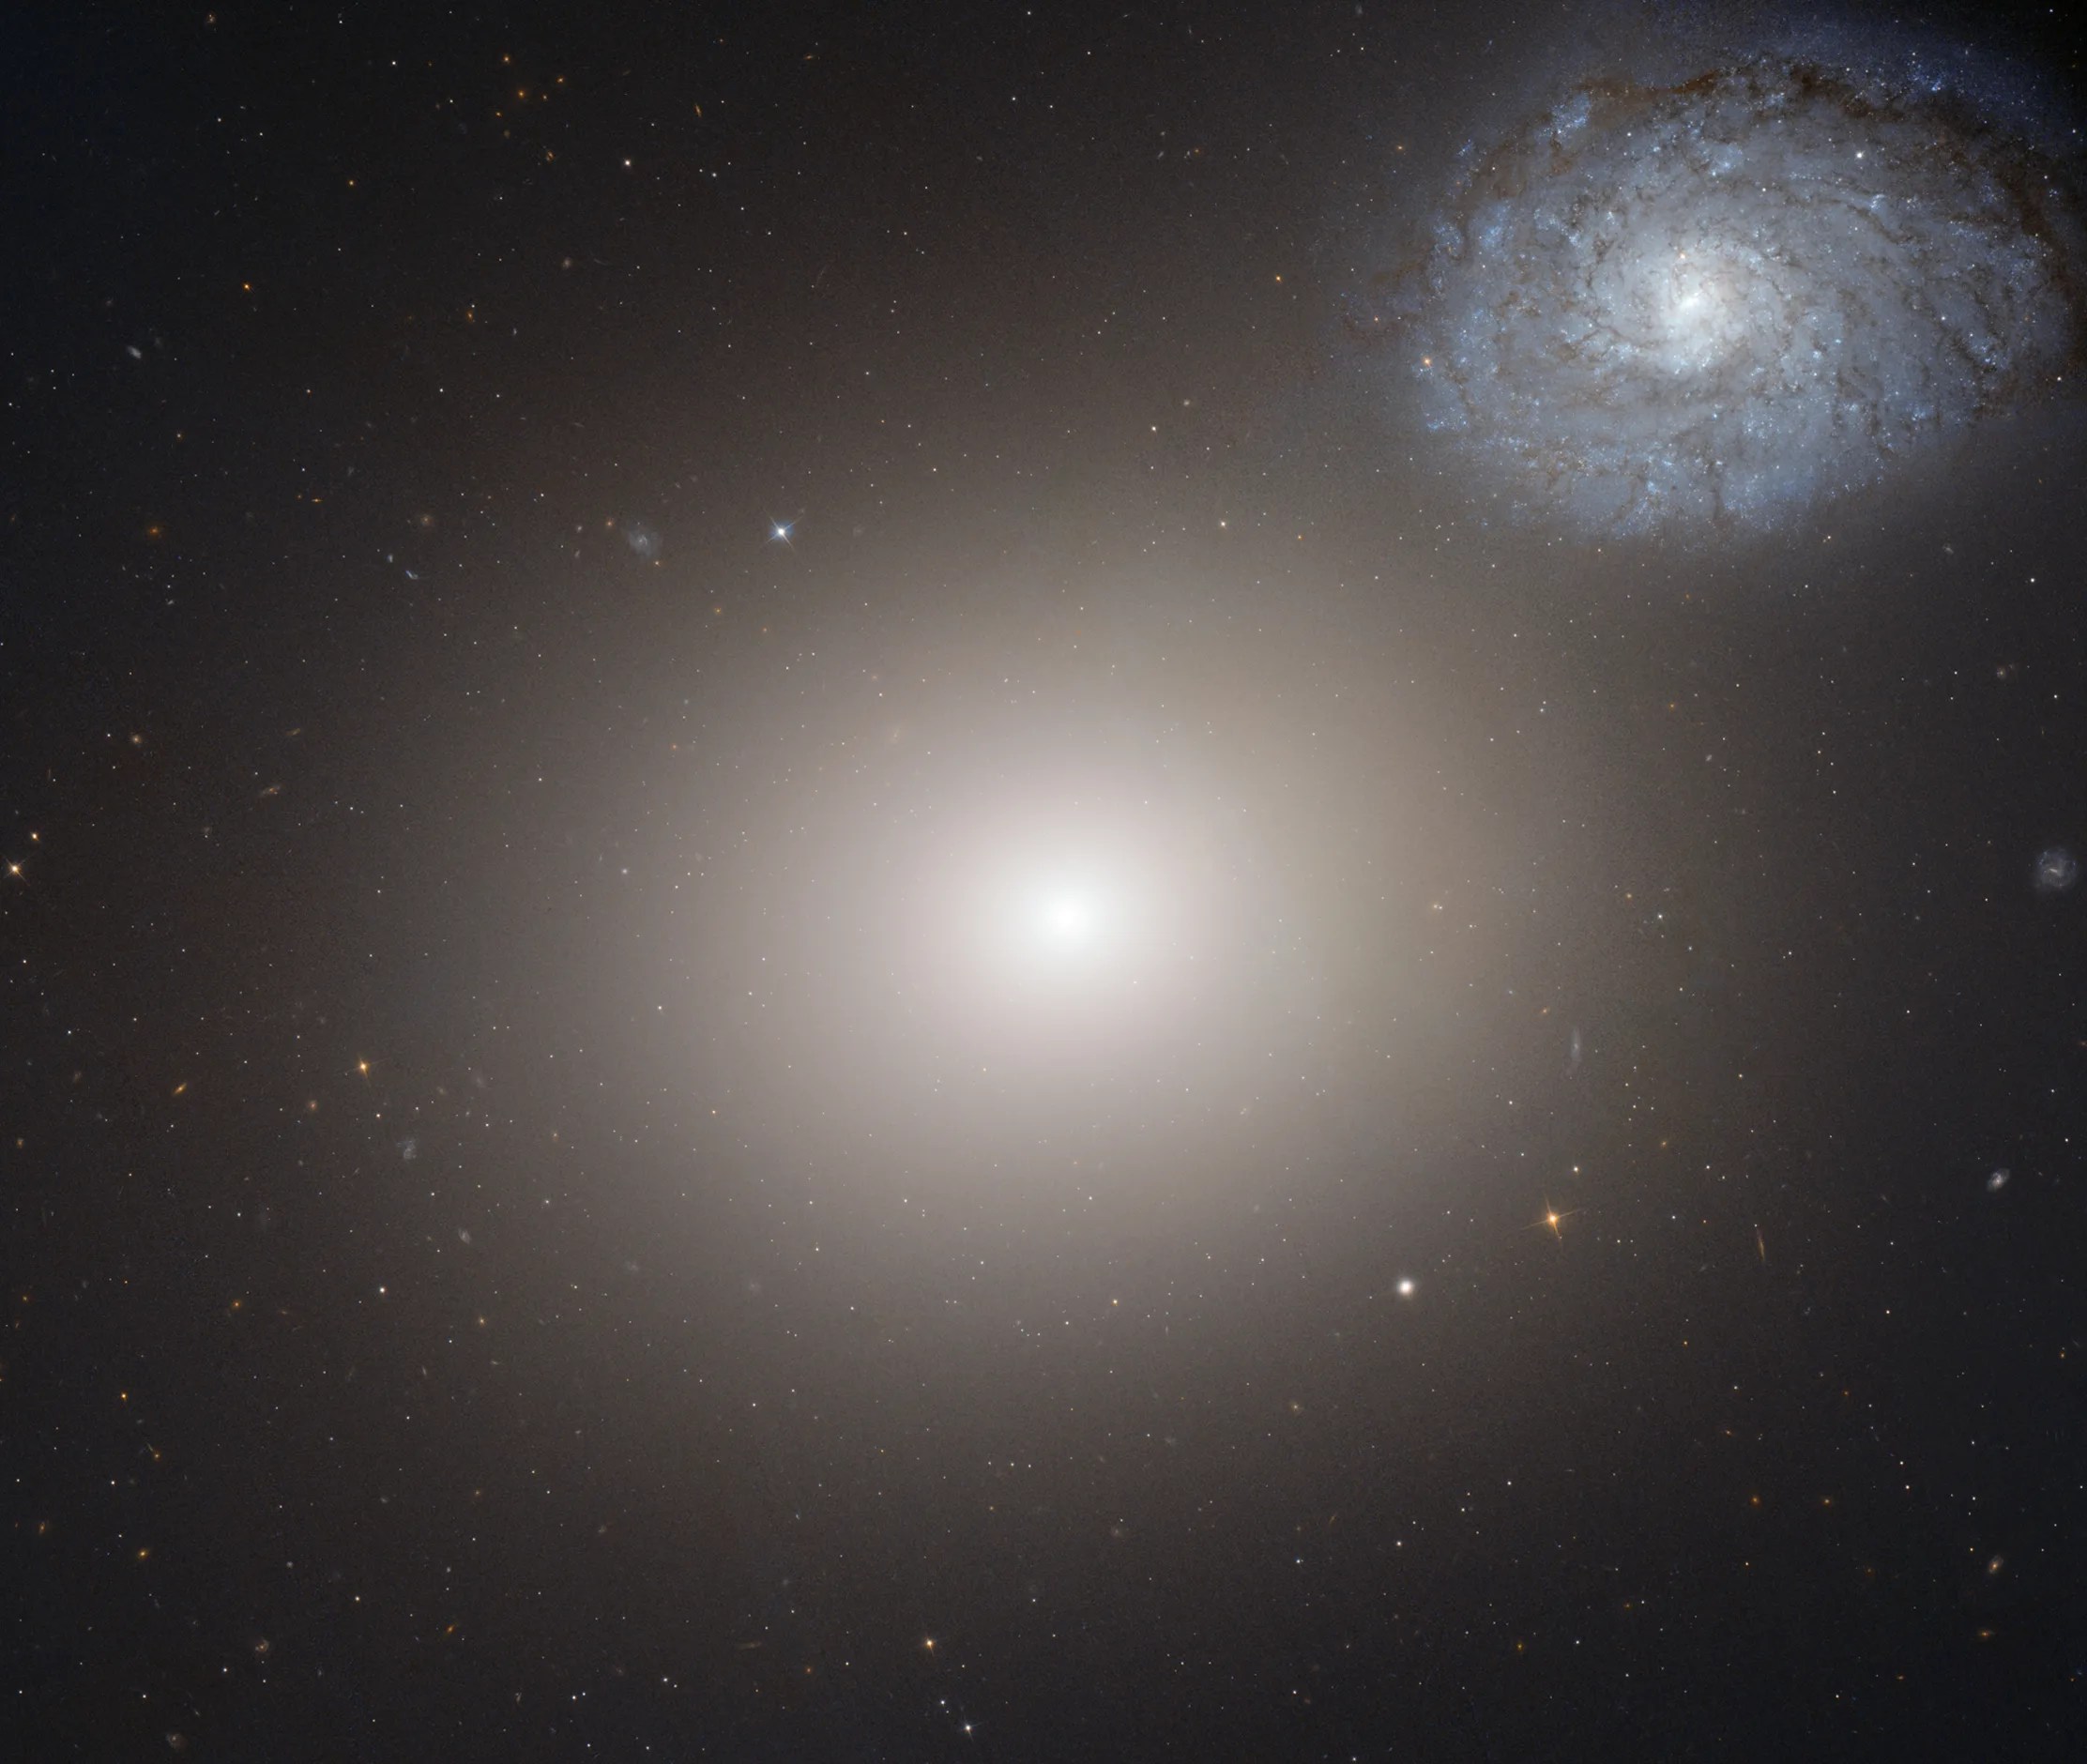 M60 and NGC 4647